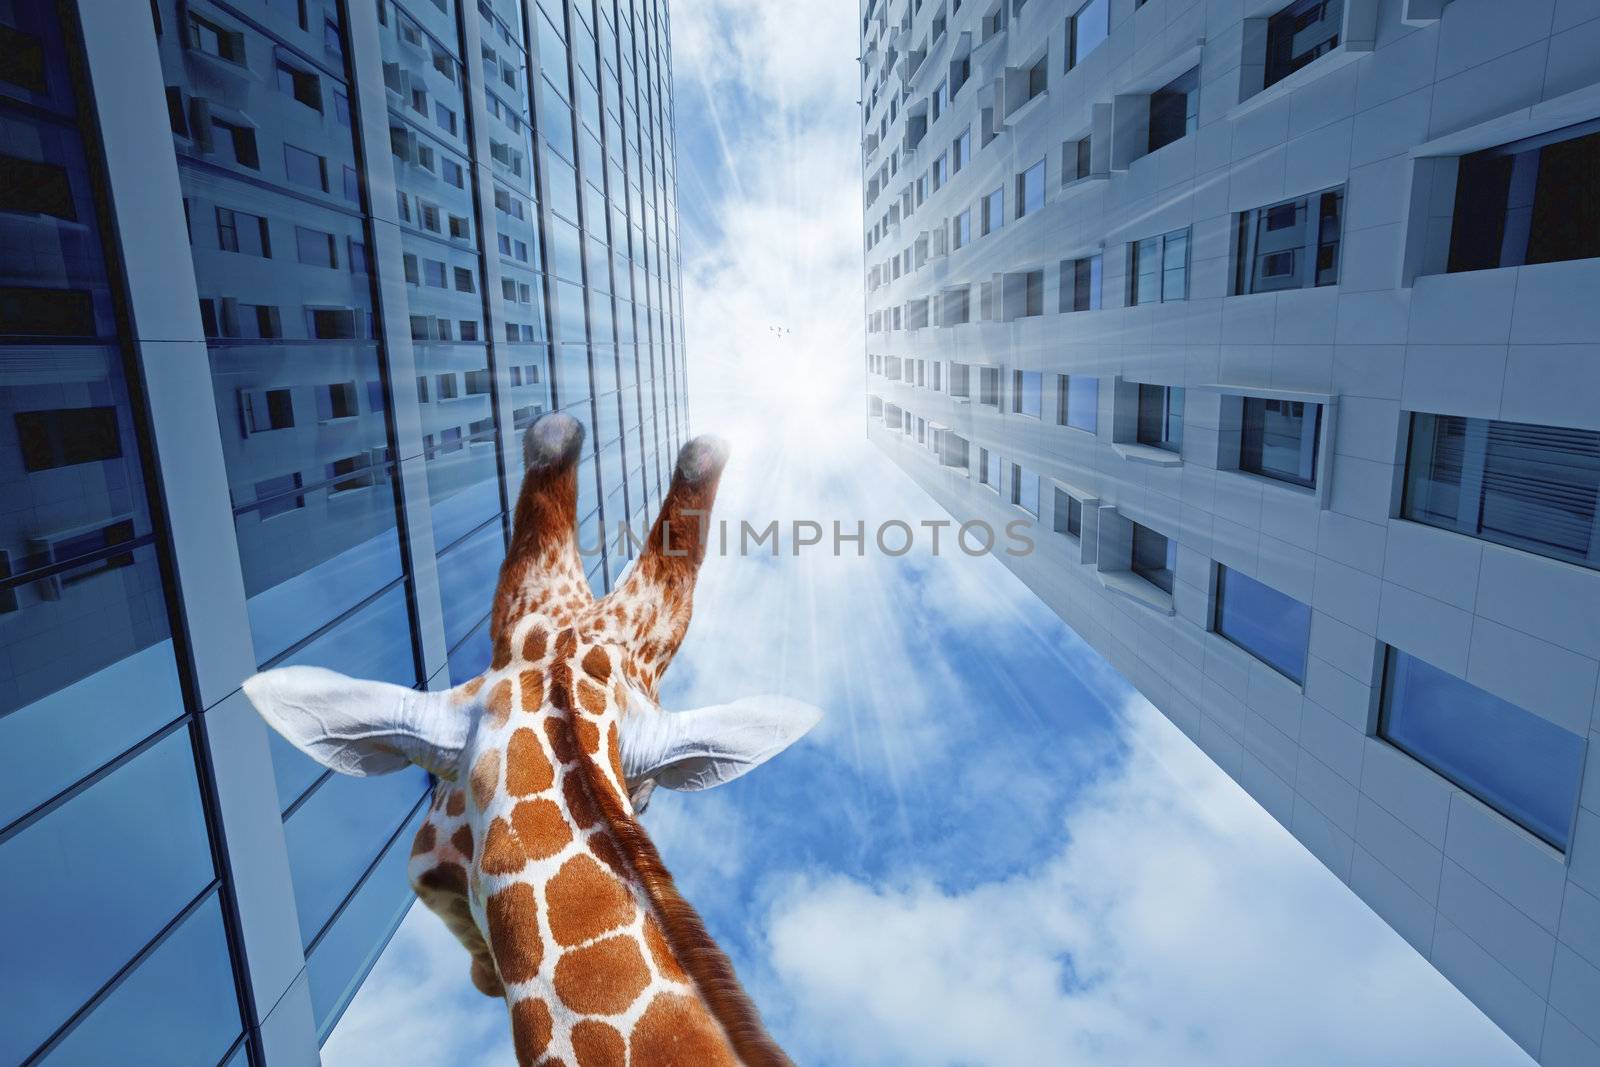 Giraffe in the city by kjorgen